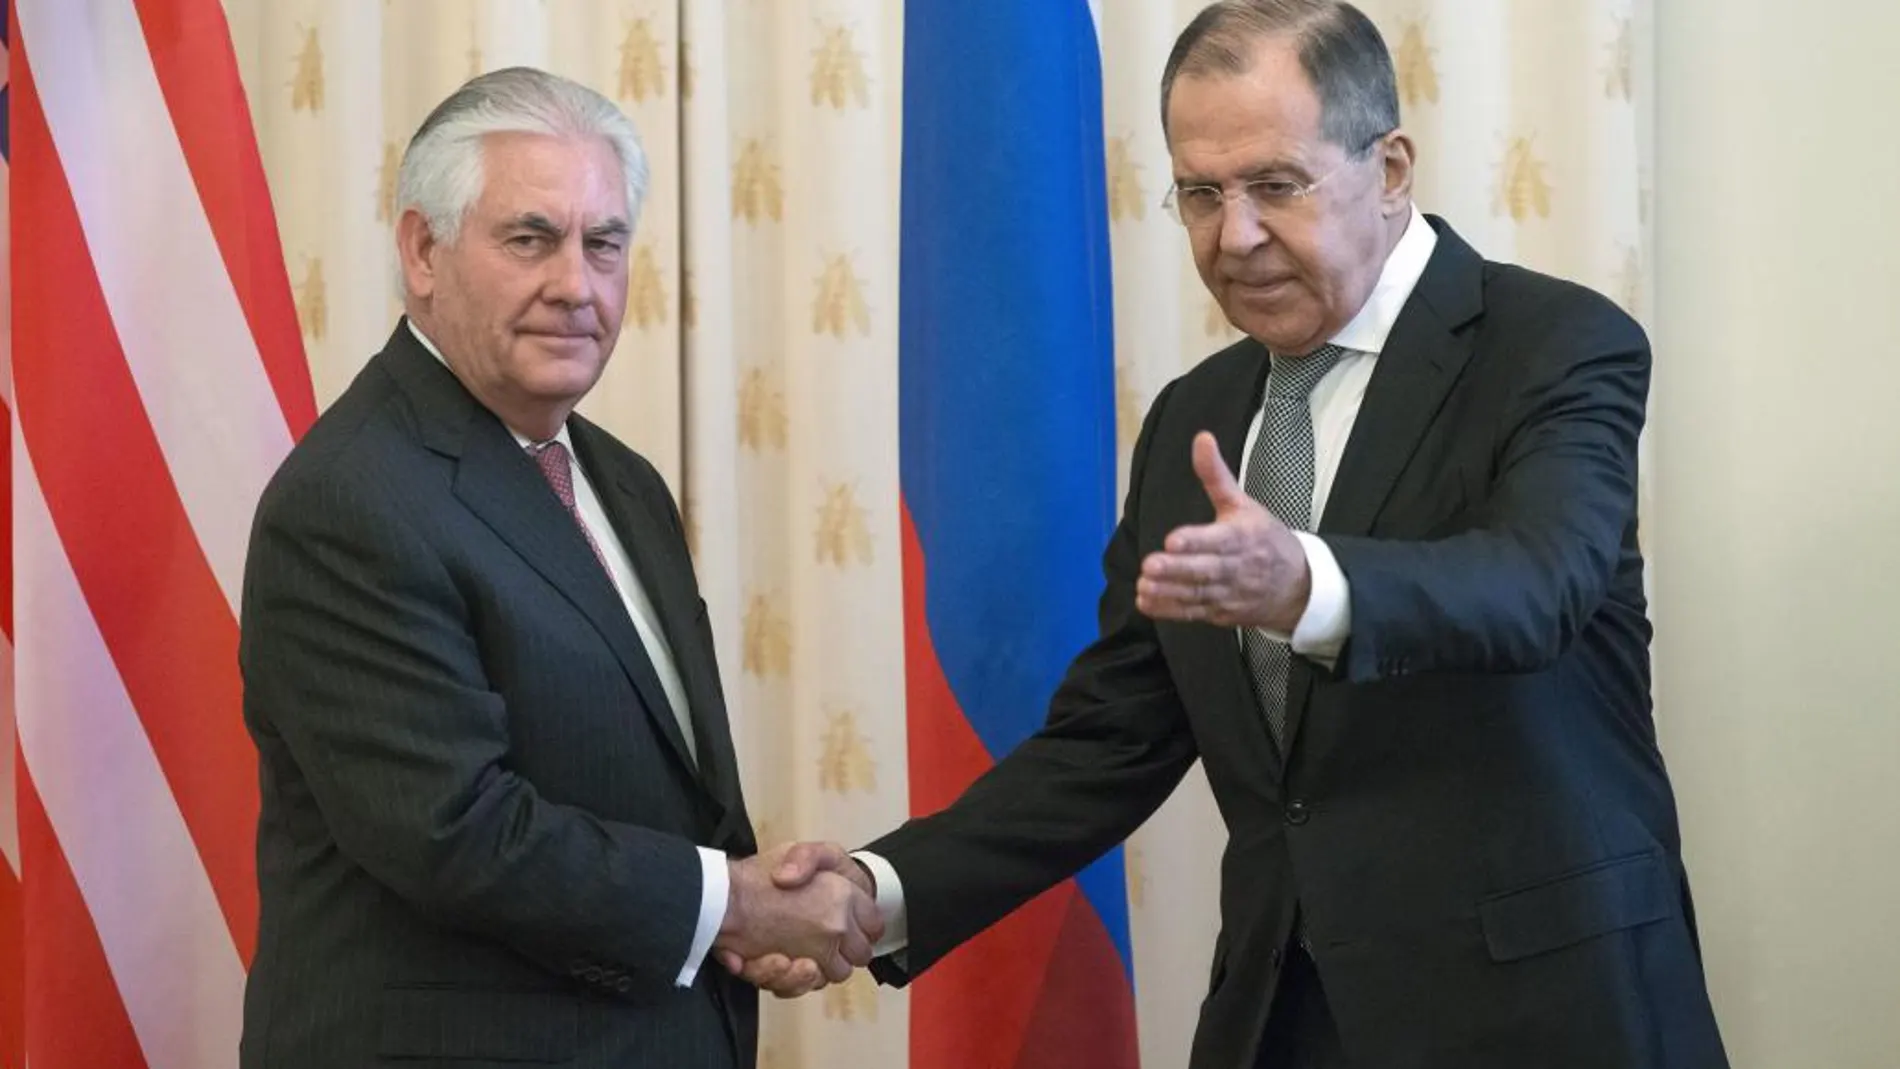 E secretario de Estado norteamericano, Rex Tillerson saluda al ministro de Exteriores ruso, Sergey Lavrov, durante su encuentro en Moscú